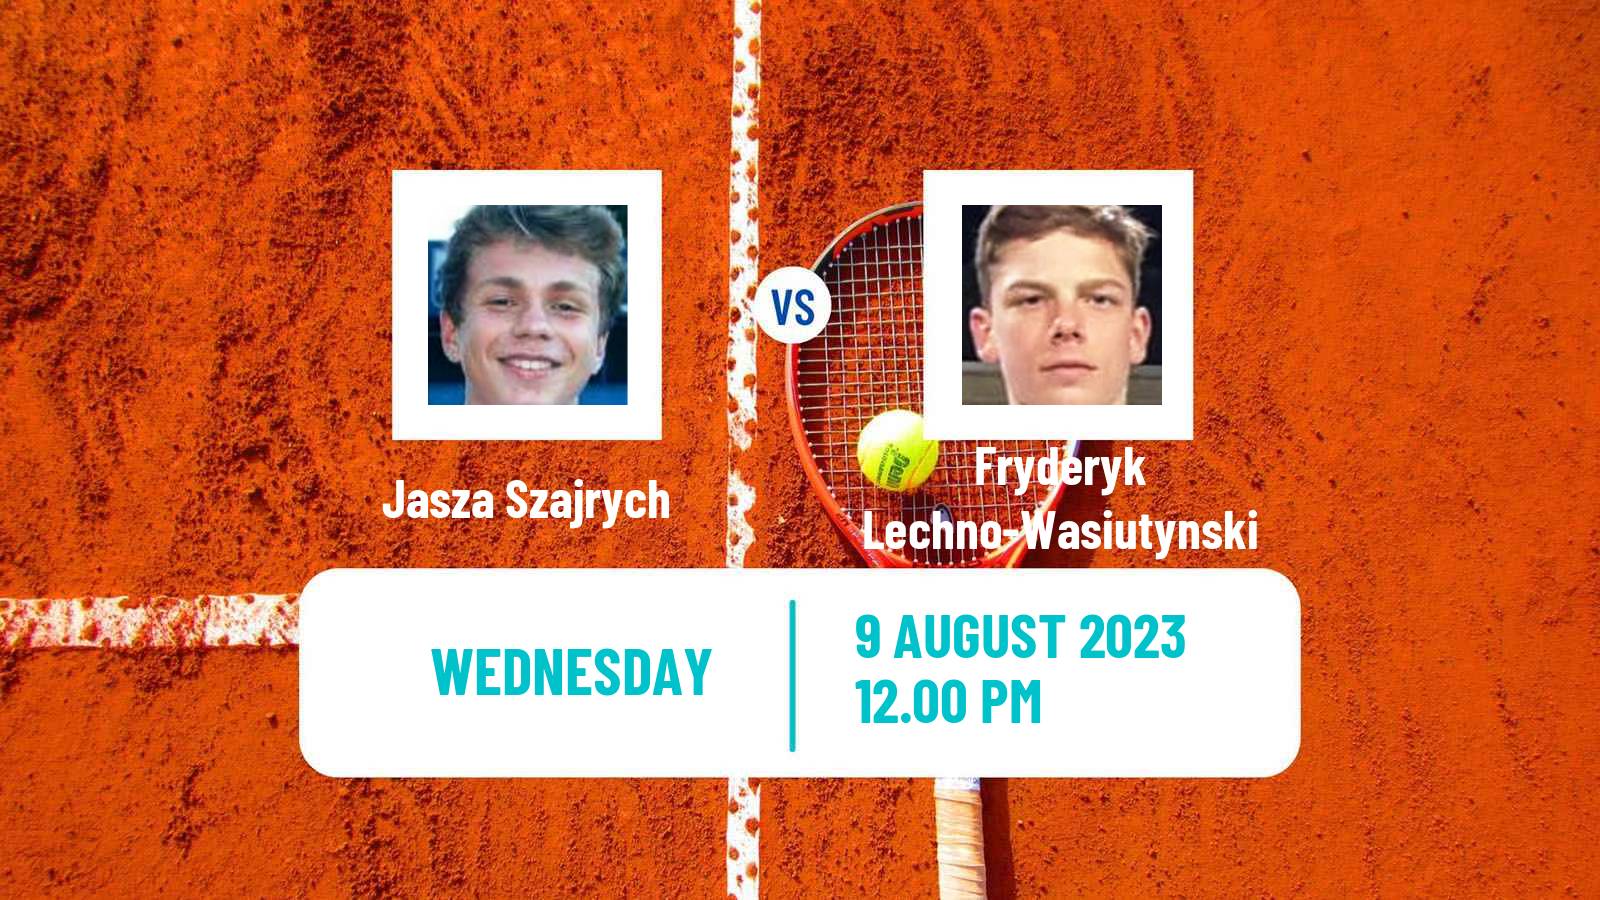 Tennis ITF M25 Lodz Men 2023 Jasza Szajrych - Fryderyk Lechno-Wasiutynski